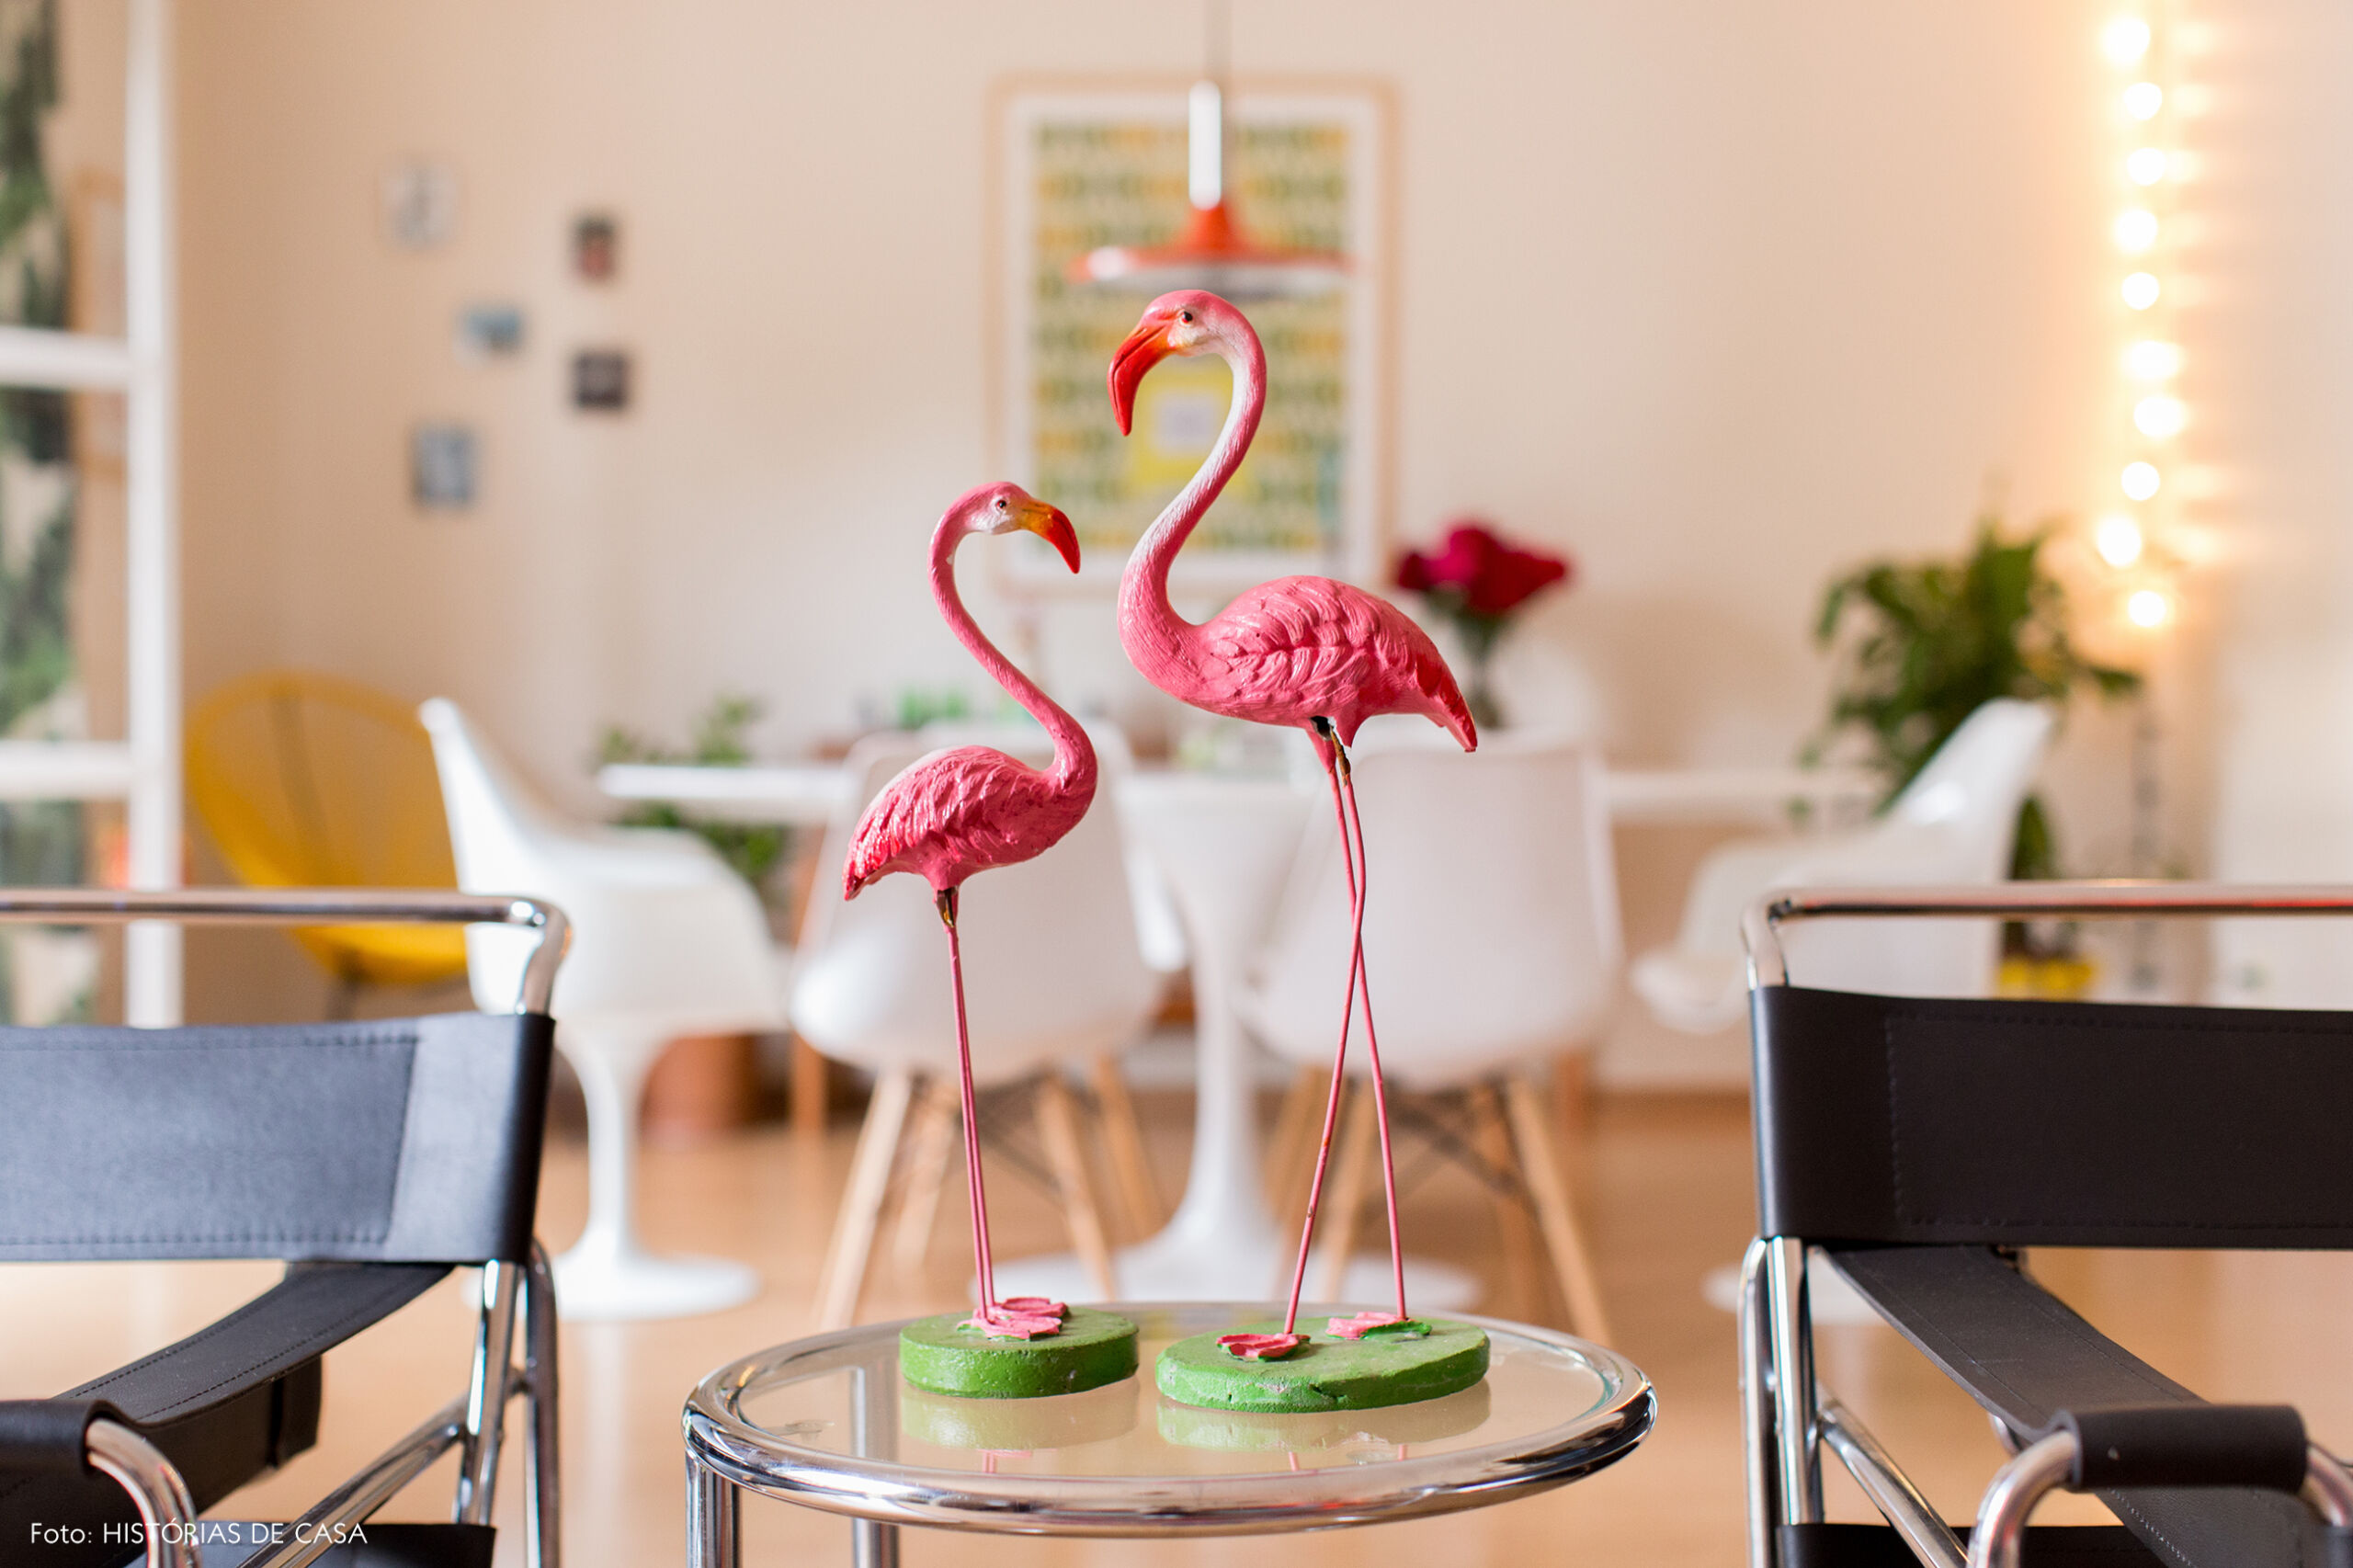 Decoração com detalhes kitsch, como flamingos